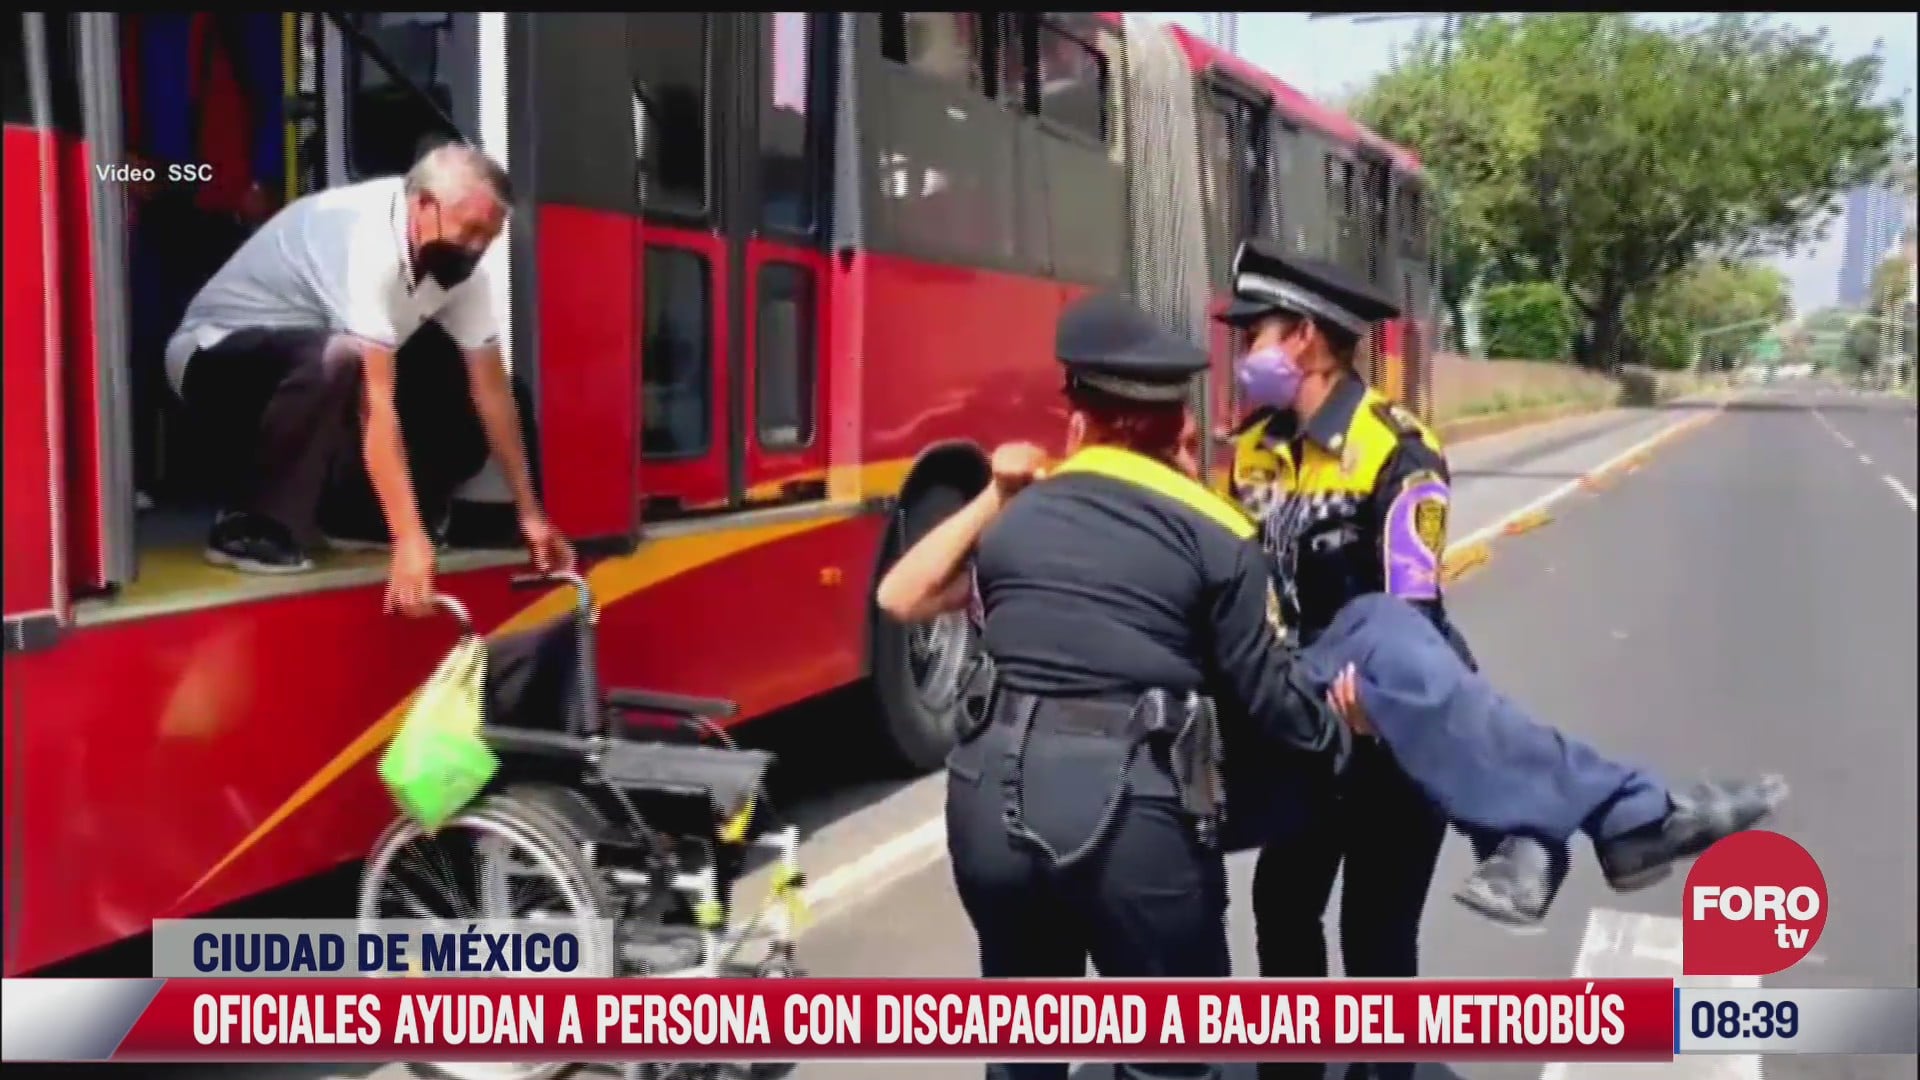 policias ayudan a bajar a persona en silla de ruedas de metrobus descompuesto